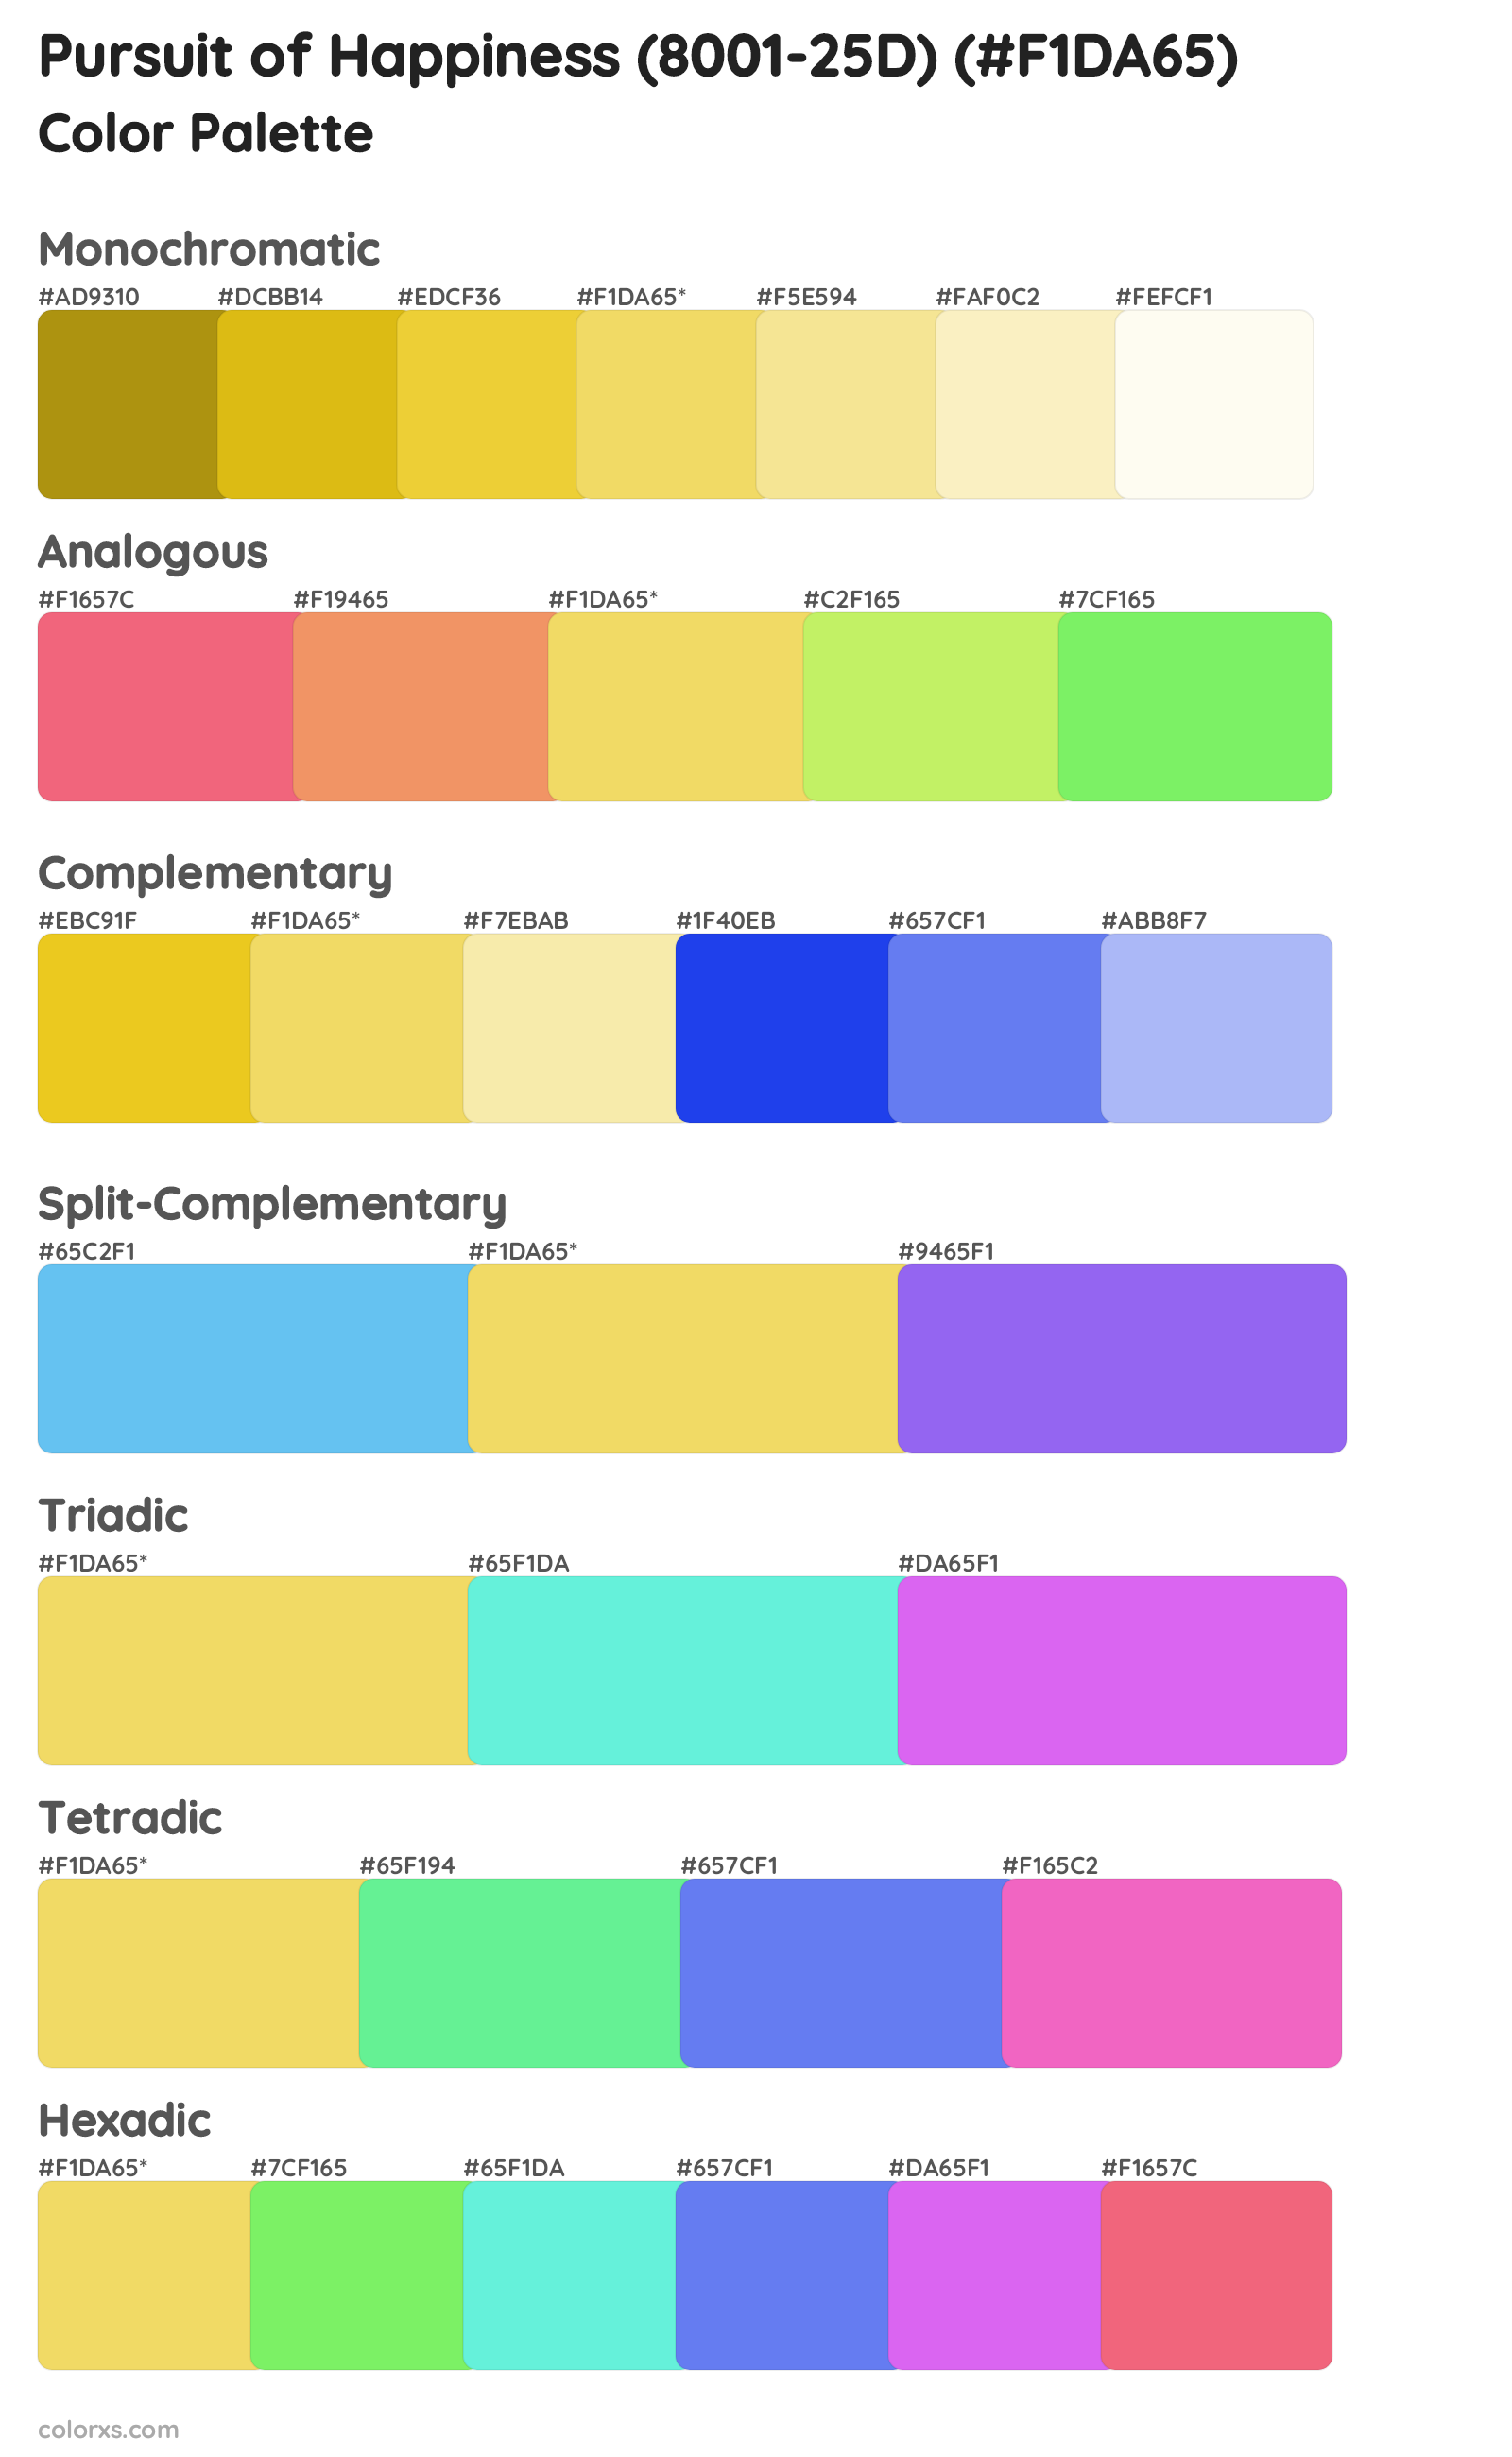 Pursuit of Happiness (8001-25D) Color Scheme Palettes